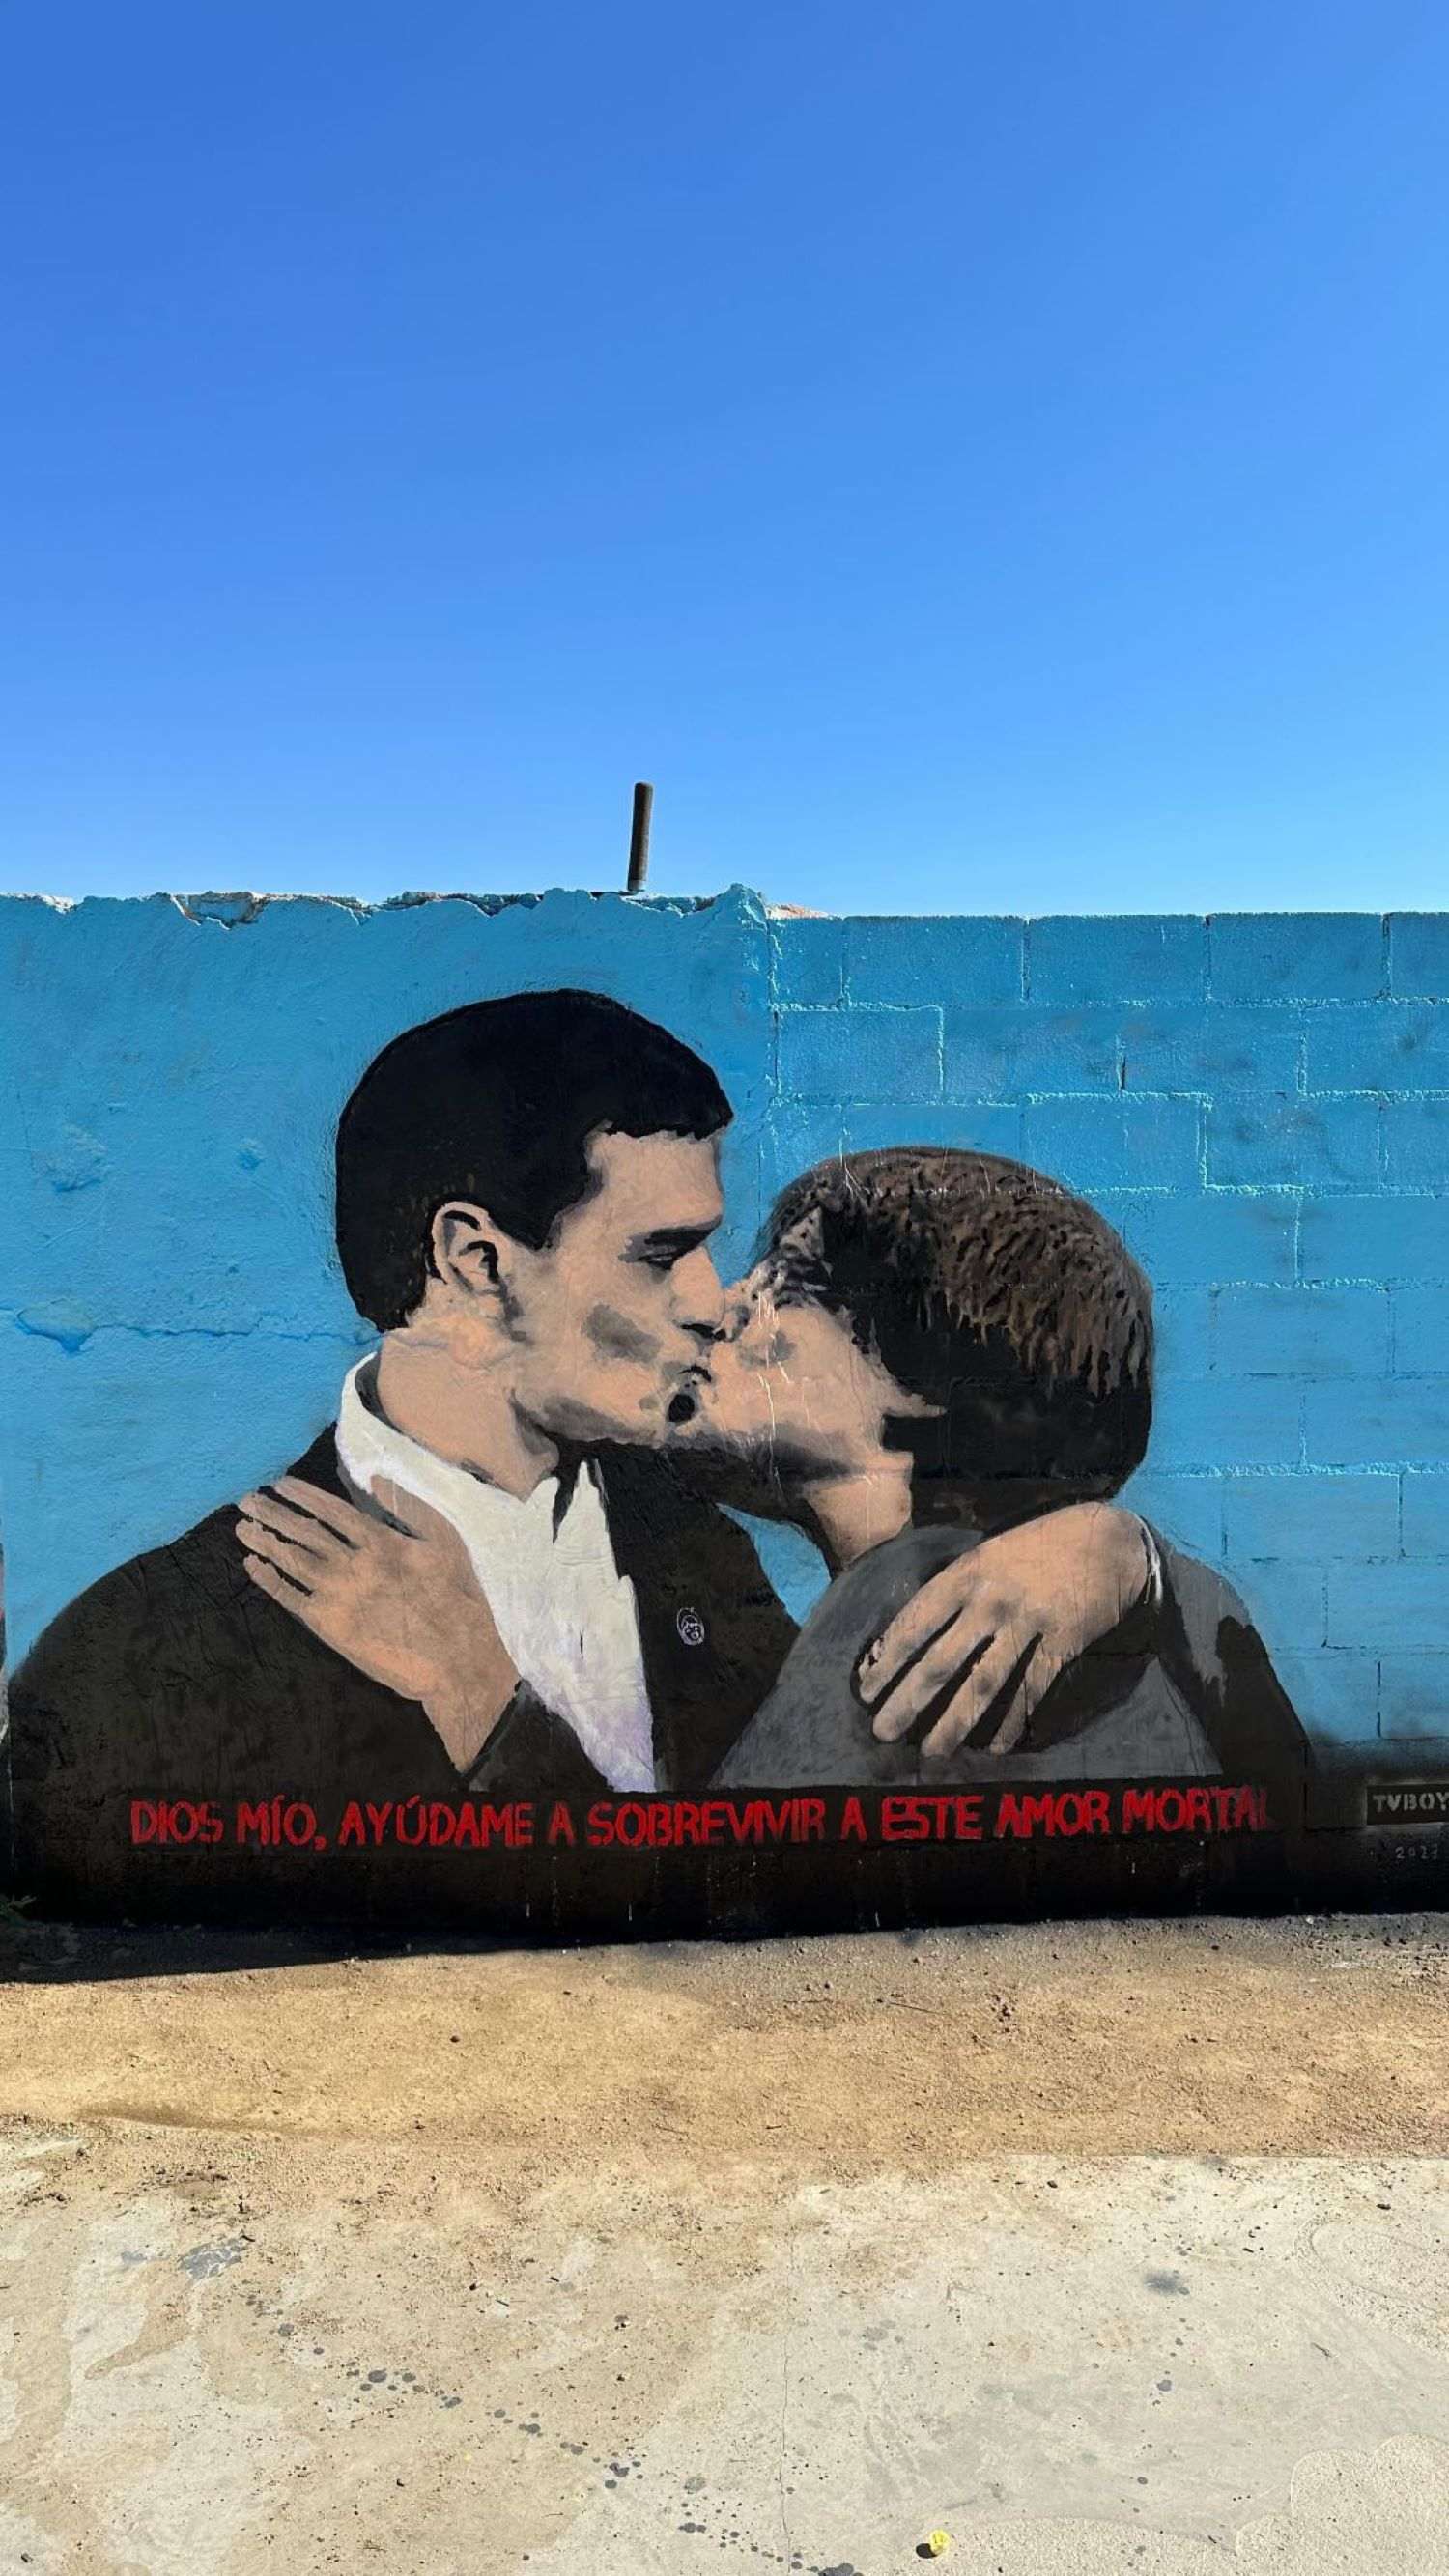 Pedro Sánchez y Carles Puigdemont se dan un beso en el nuevo mural del artista Tvboy